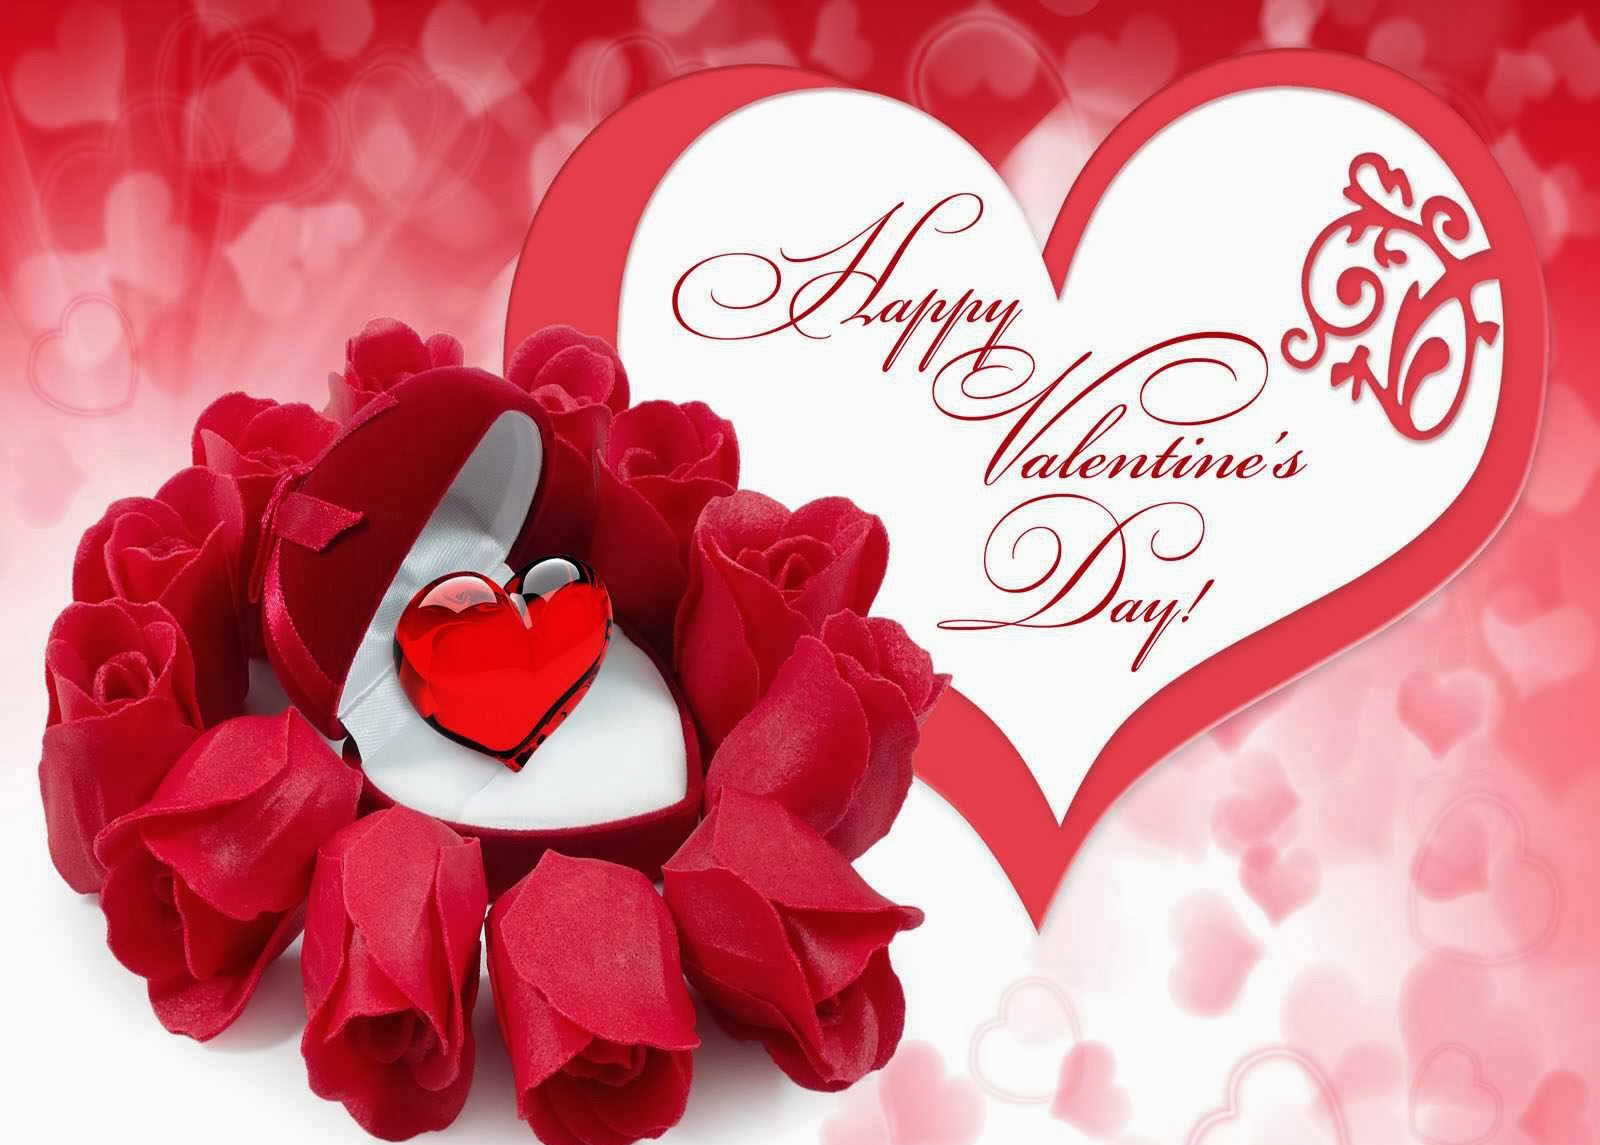 Hãy để thiệp Valentine thể hiện tình cảm của bạn đến người mình yêu thương vào năm 2024 này. Tặng cho họ một món quà đầy ý nghĩa và cảm xúc để chứng tỏ bạn luôn quan tâm và yêu thương họ.